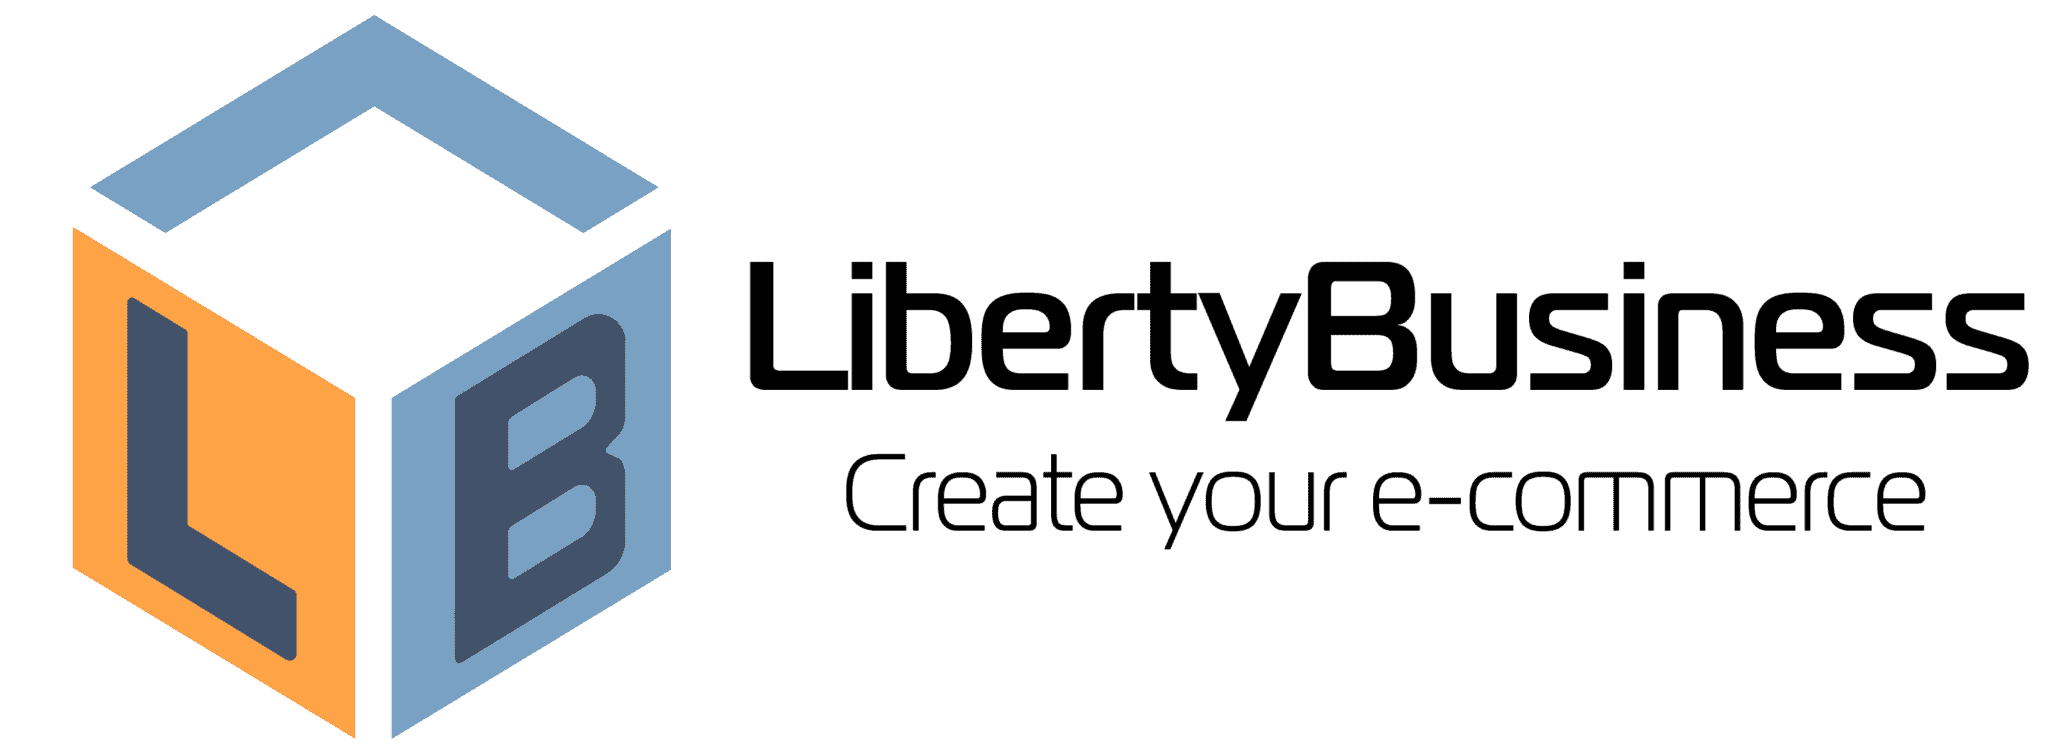 Condizioni d'uso e assistenza LibertyBusiness